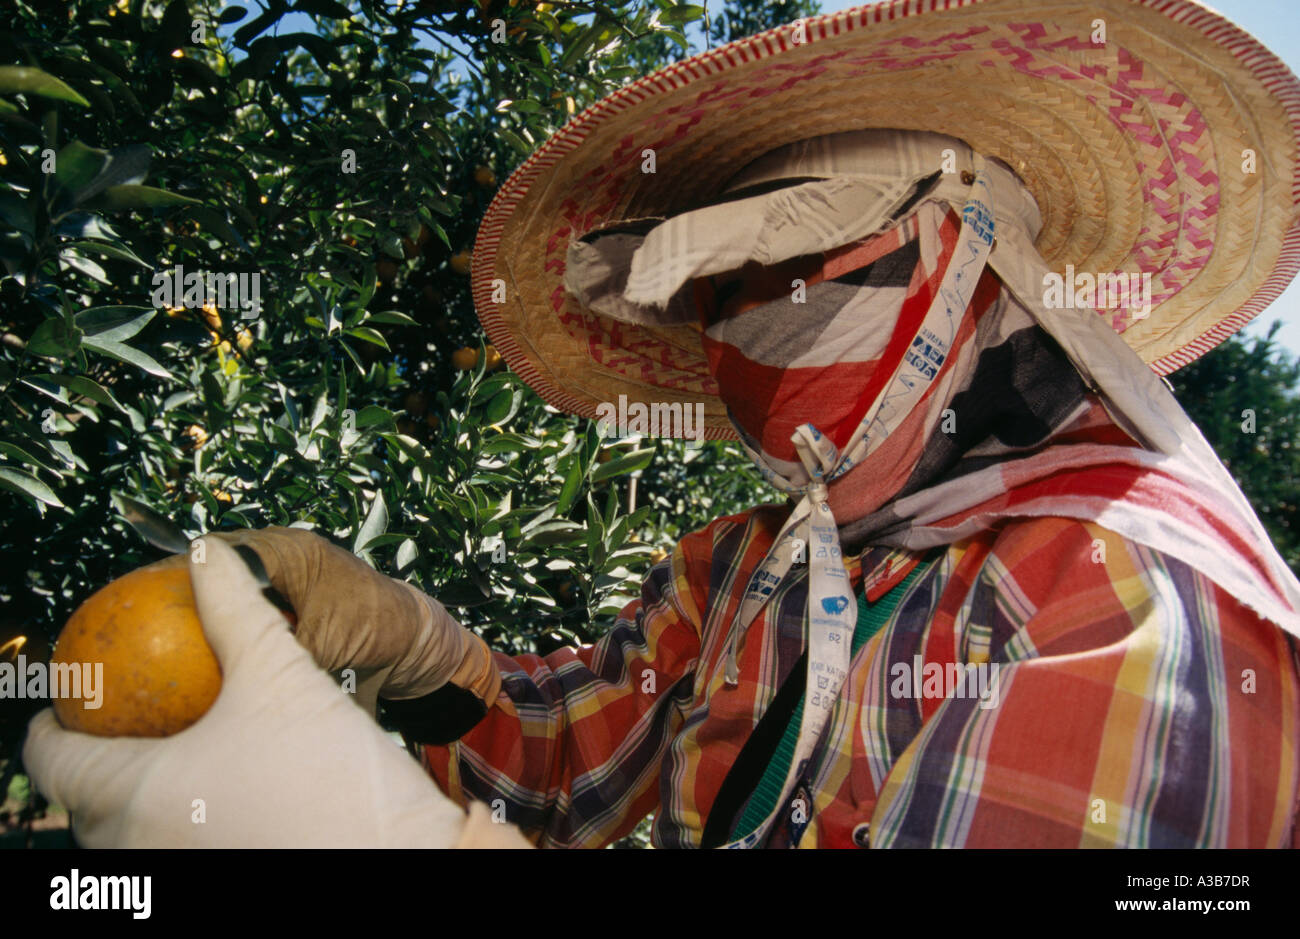 La Thaïlande Asie du sud-est la province de Chiang Mai Tha Ton travailleur récolte Orange avec des protections pour la tête et des gants longs Banque D'Images